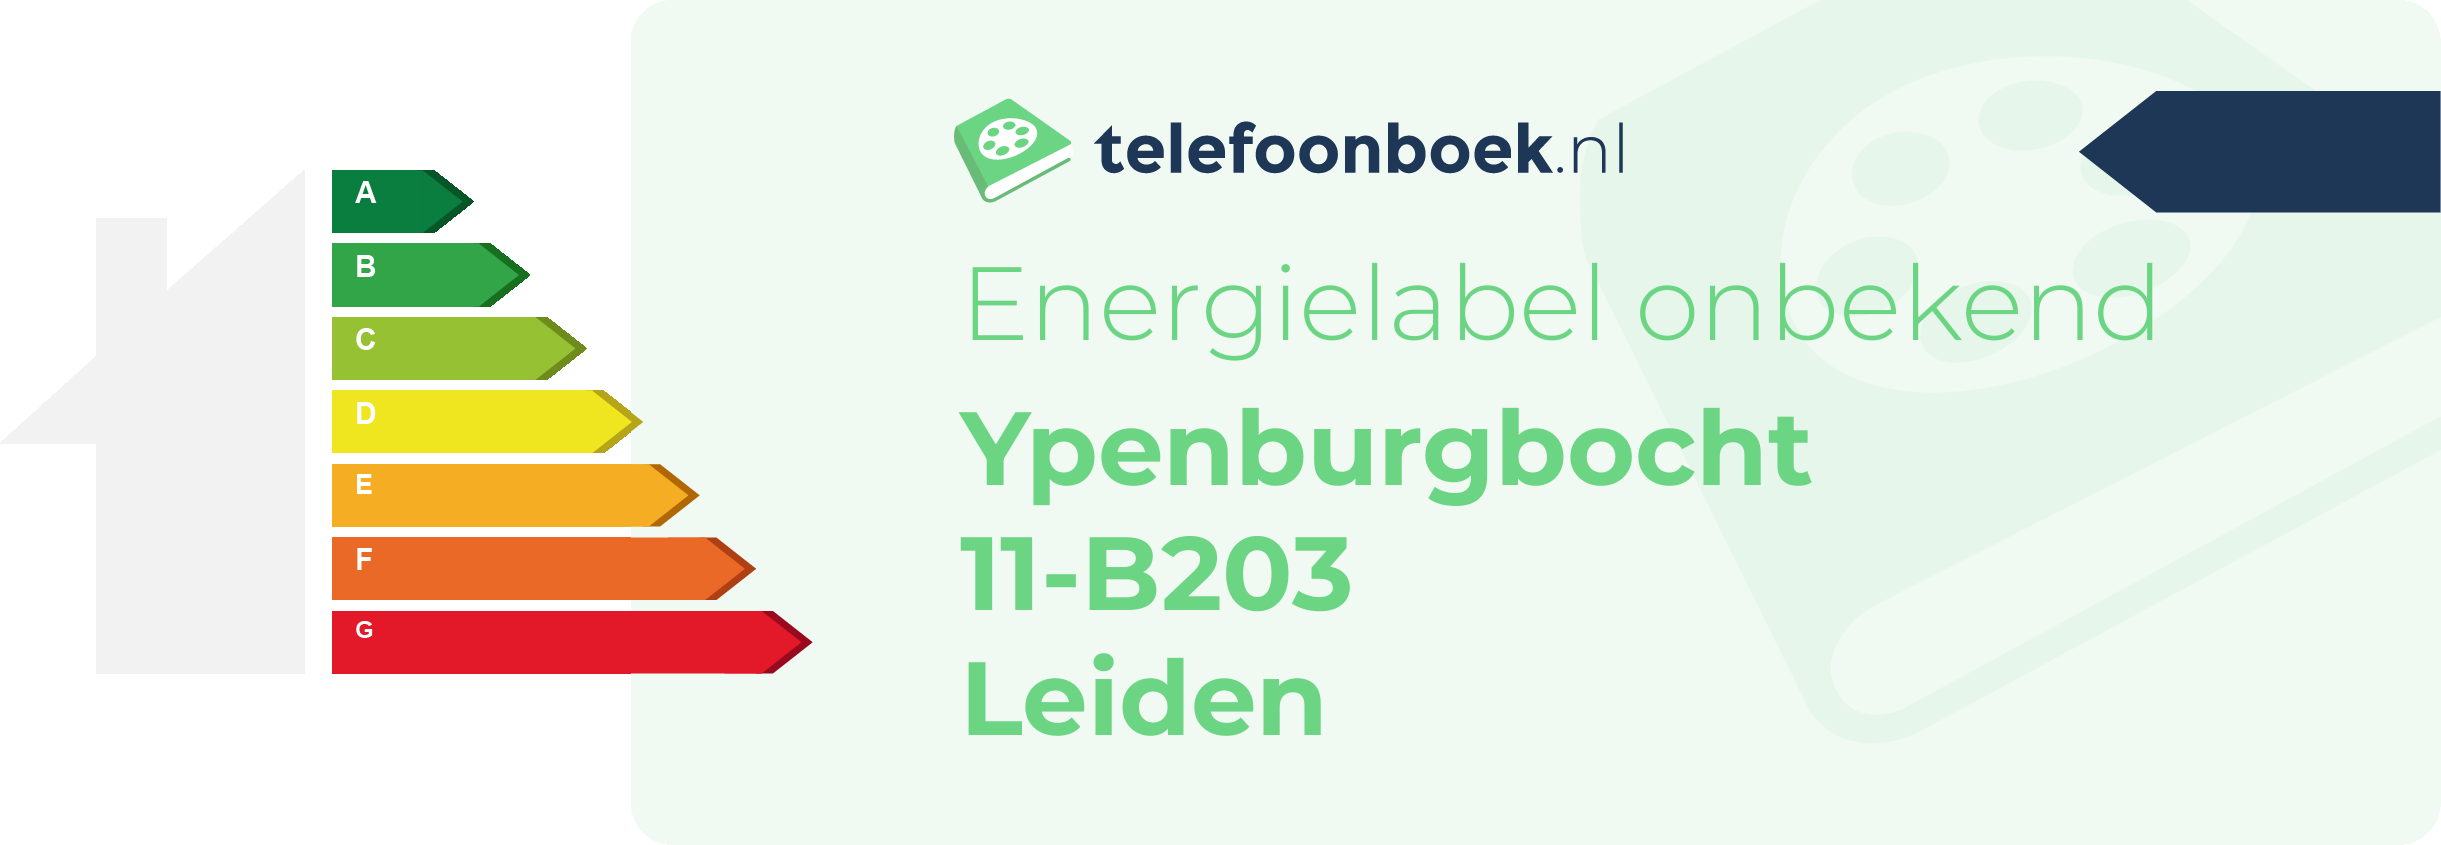 Energielabel Ypenburgbocht 11-B203 Leiden